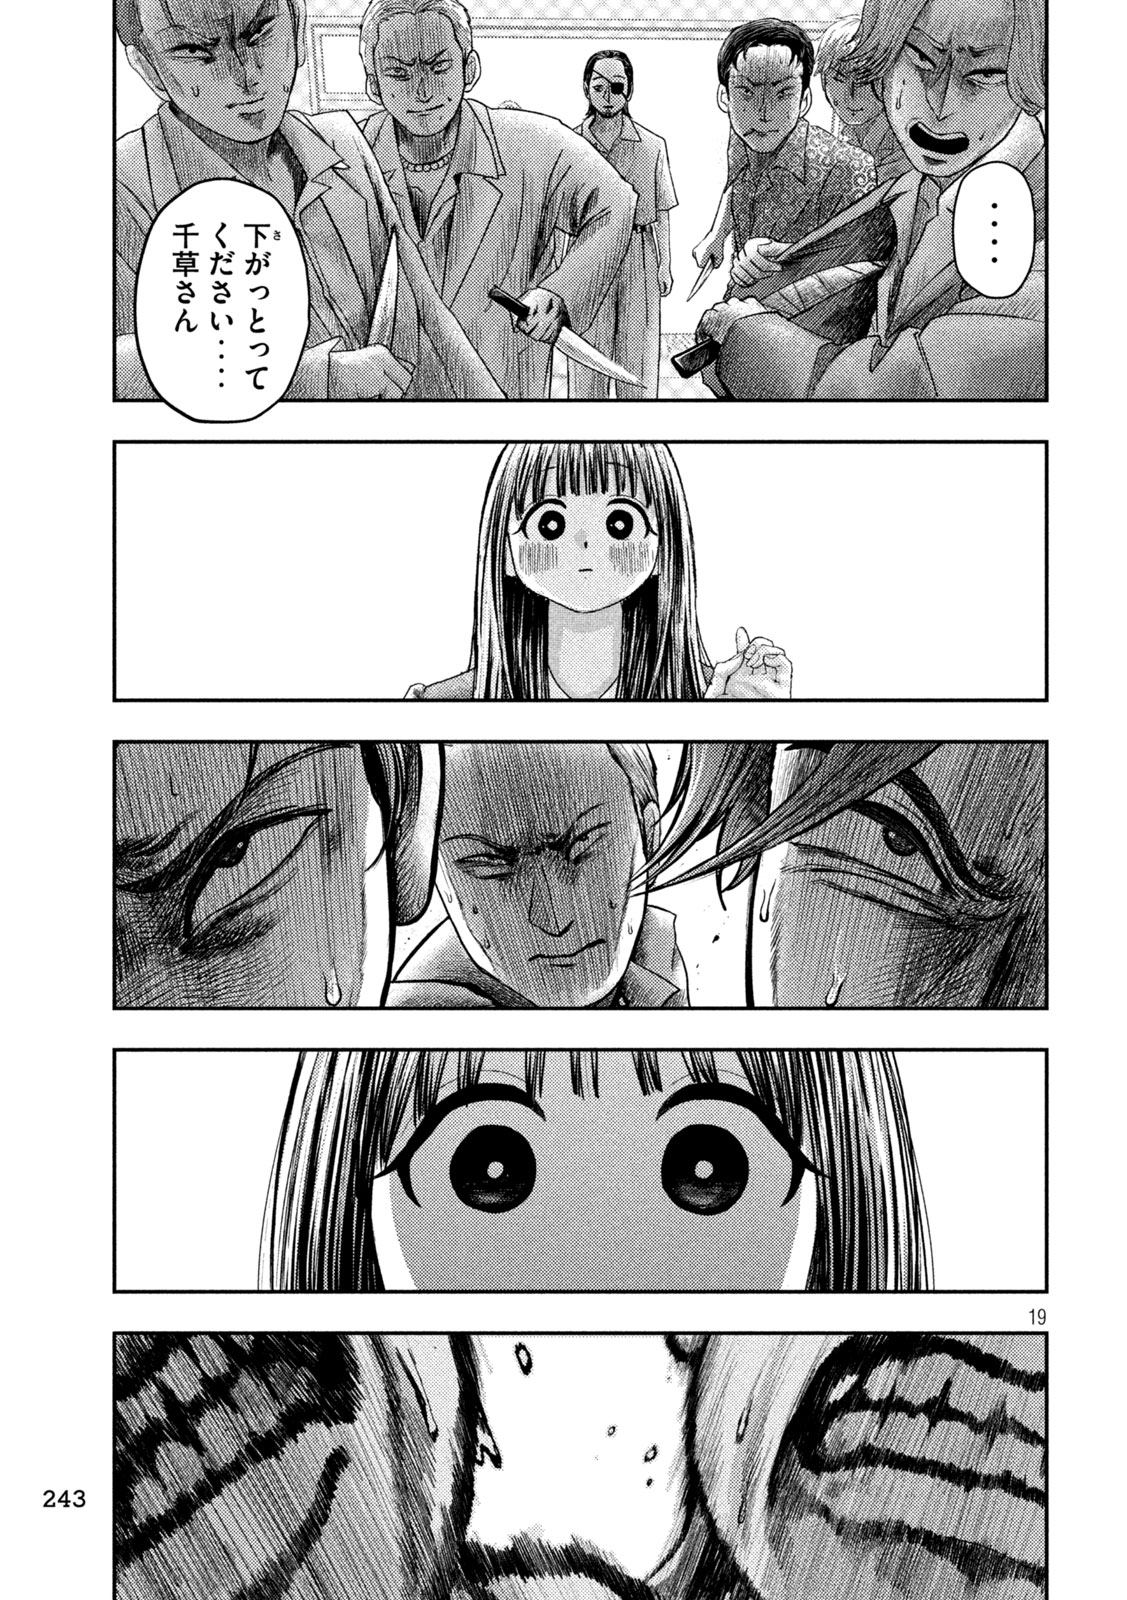 Nezumi no Koi - Chapter 19 - Page 19